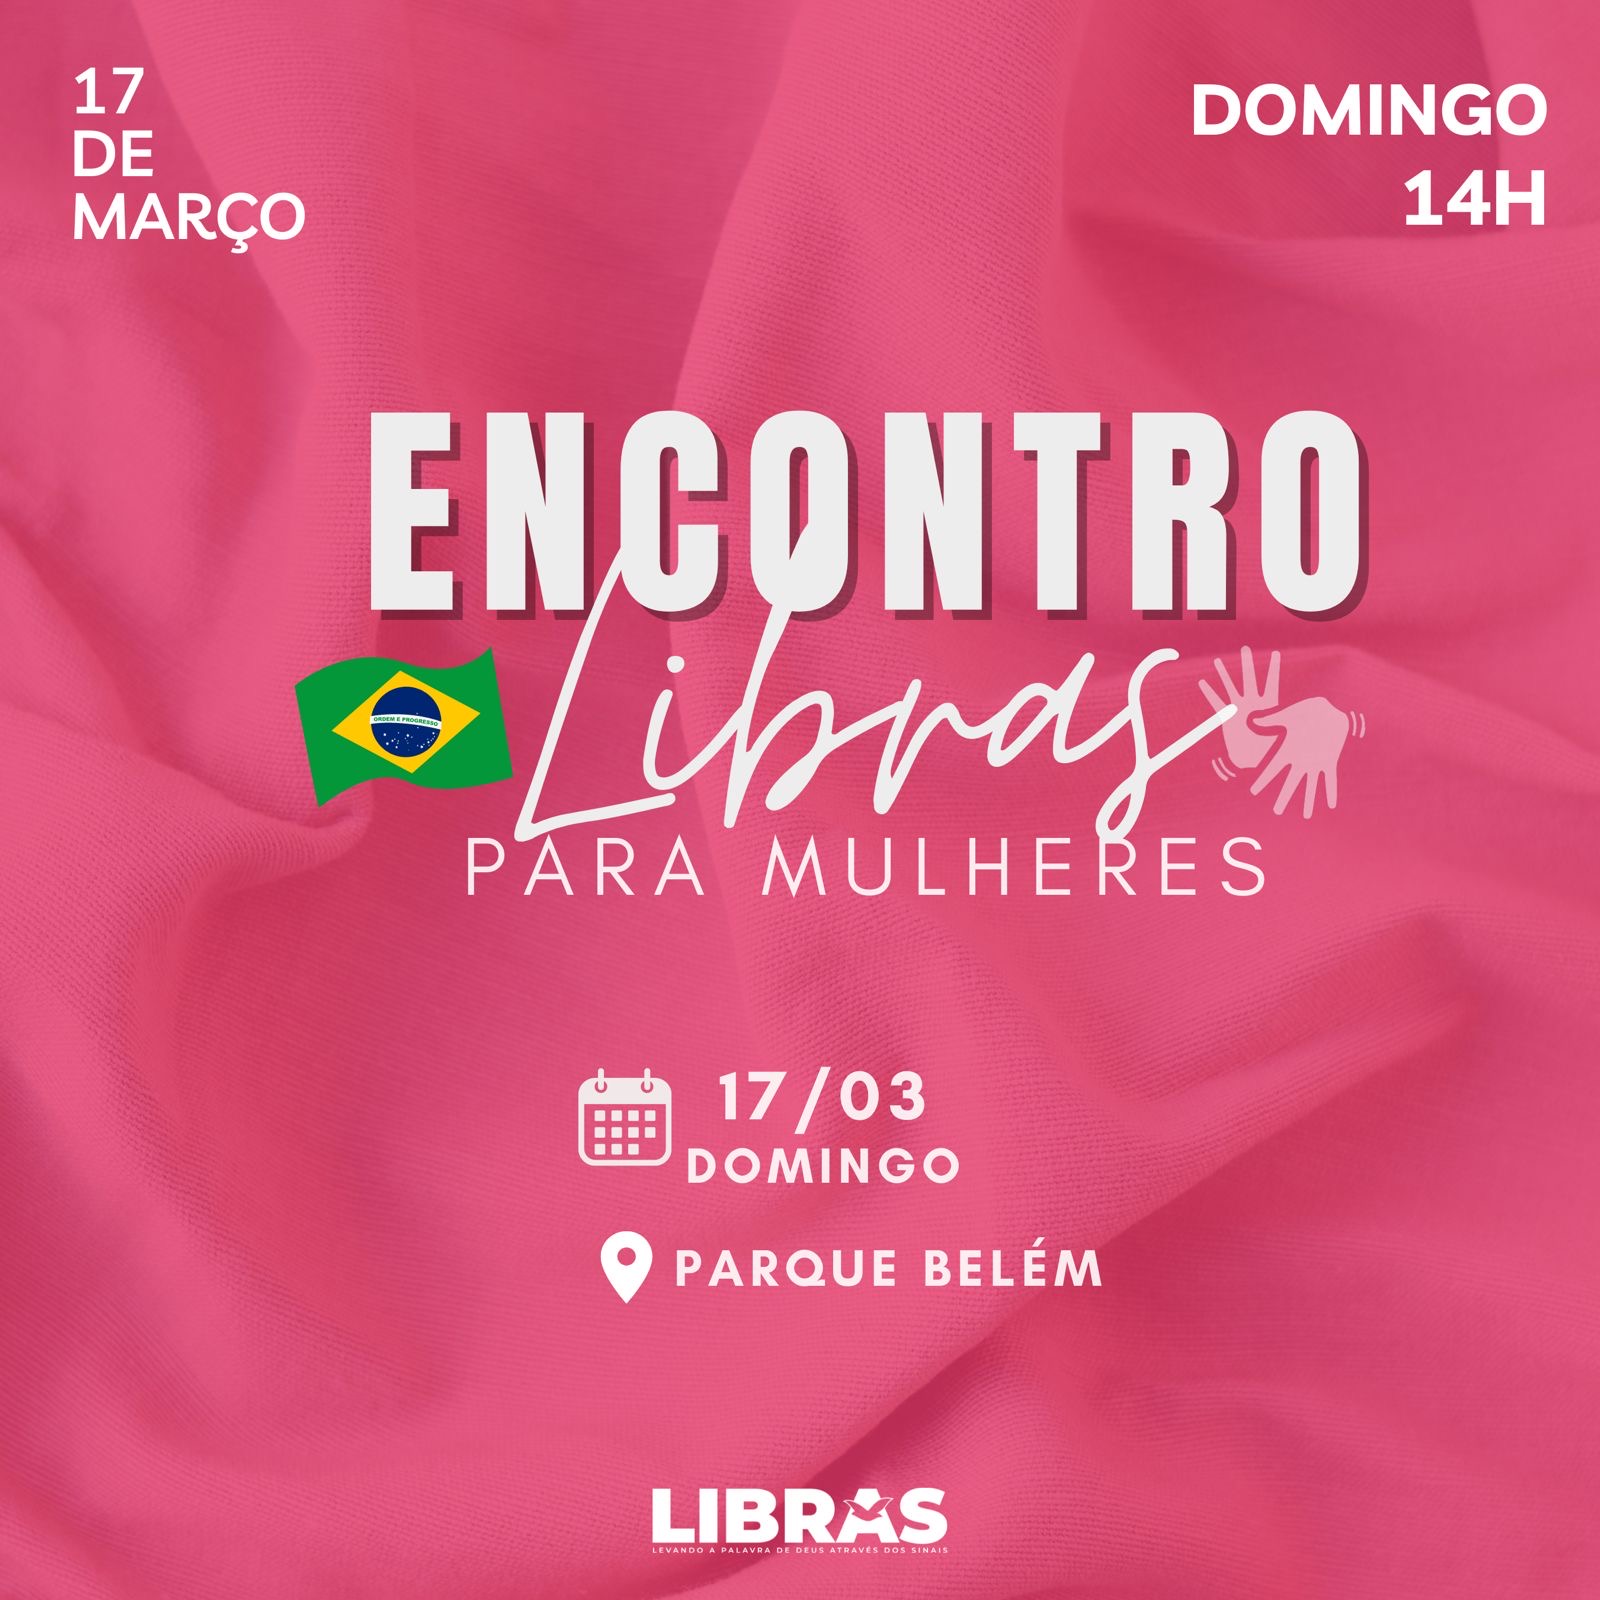 Imagem de capa - Encontro Libras para mulheres celebra a vida pelo Brasil